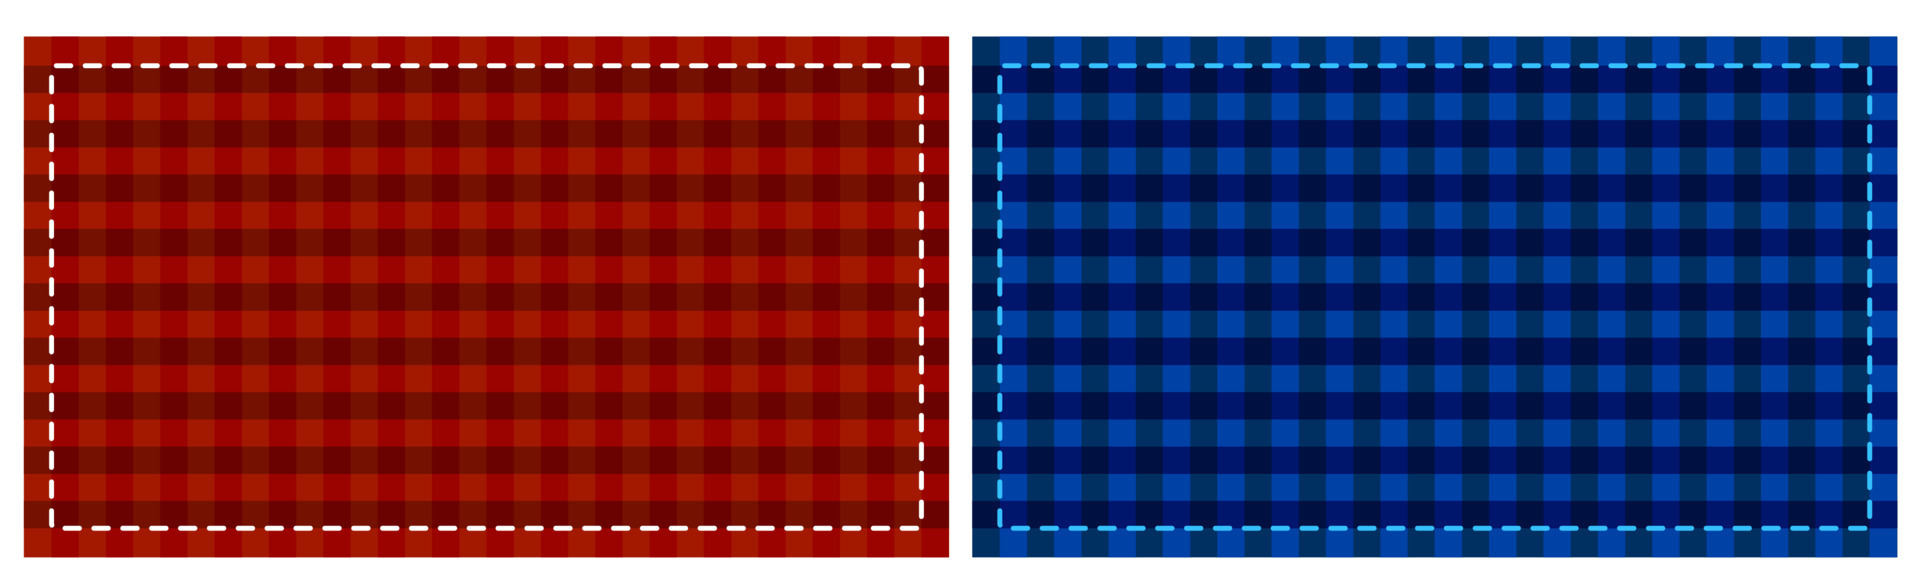 fundo de vetor padrão xadrez vermelho, textura de tecido tartan 10551646  Vetor no Vecteezy